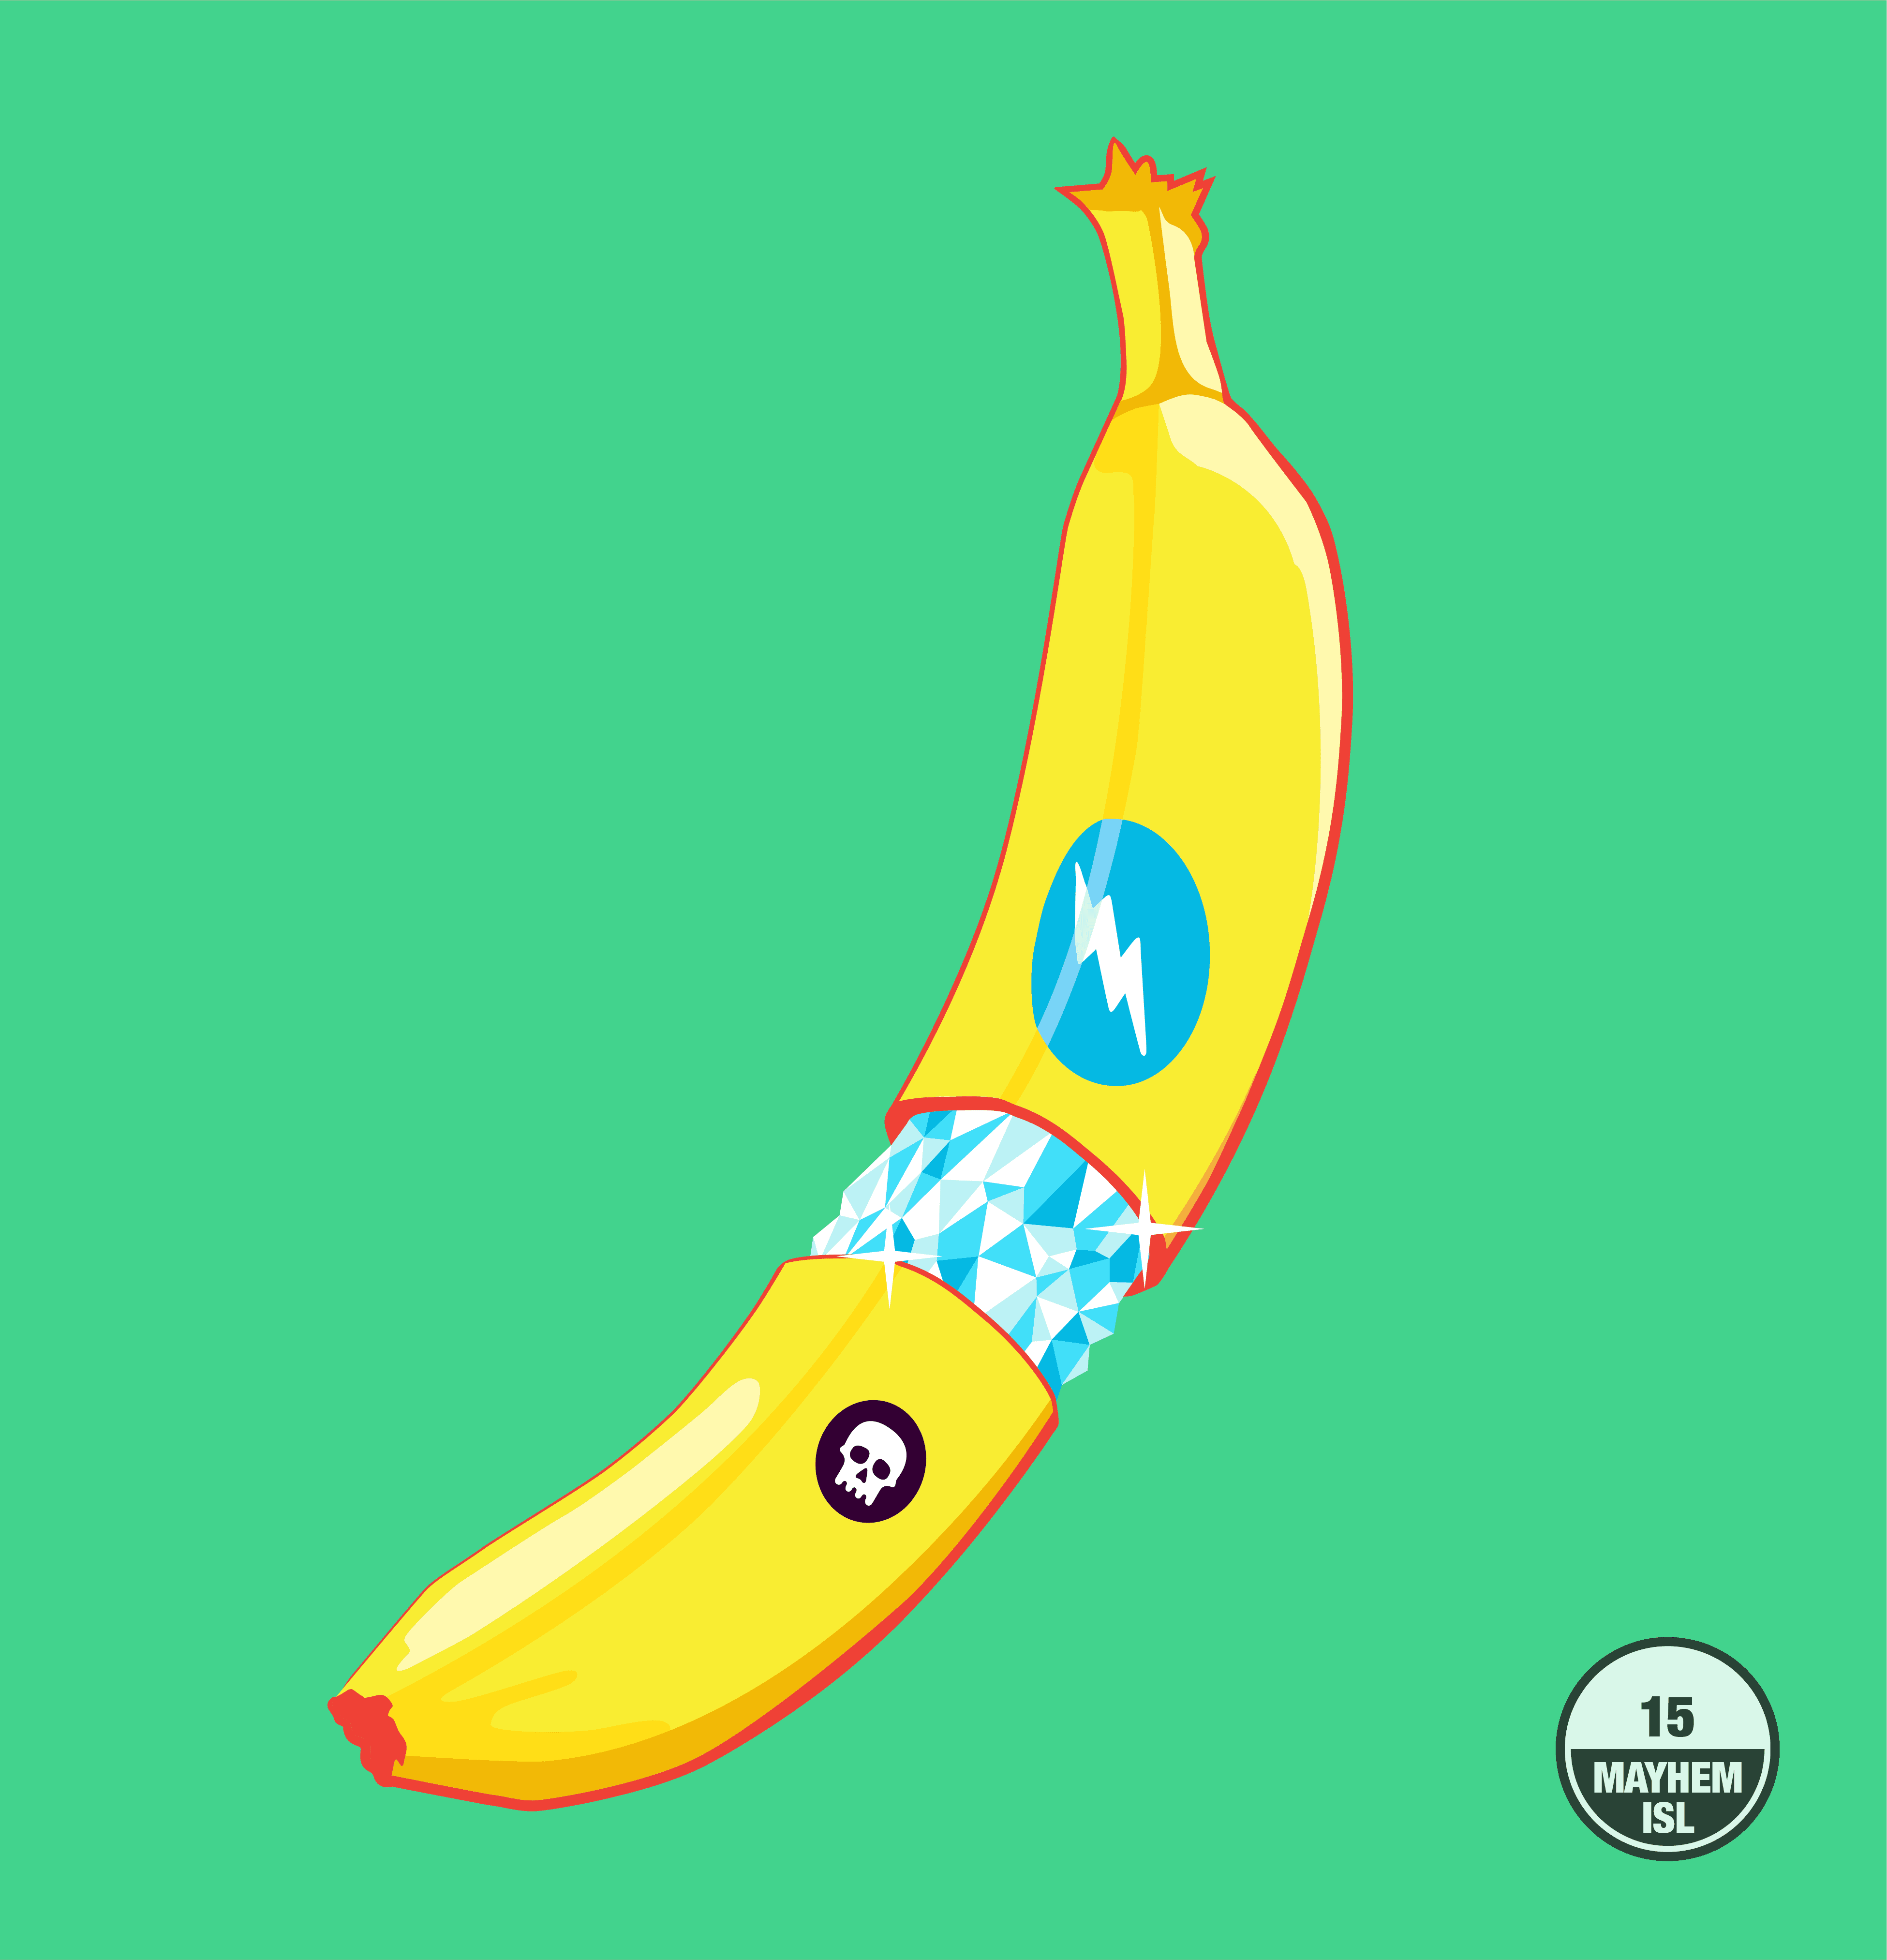 Mayhem Island Banana #15